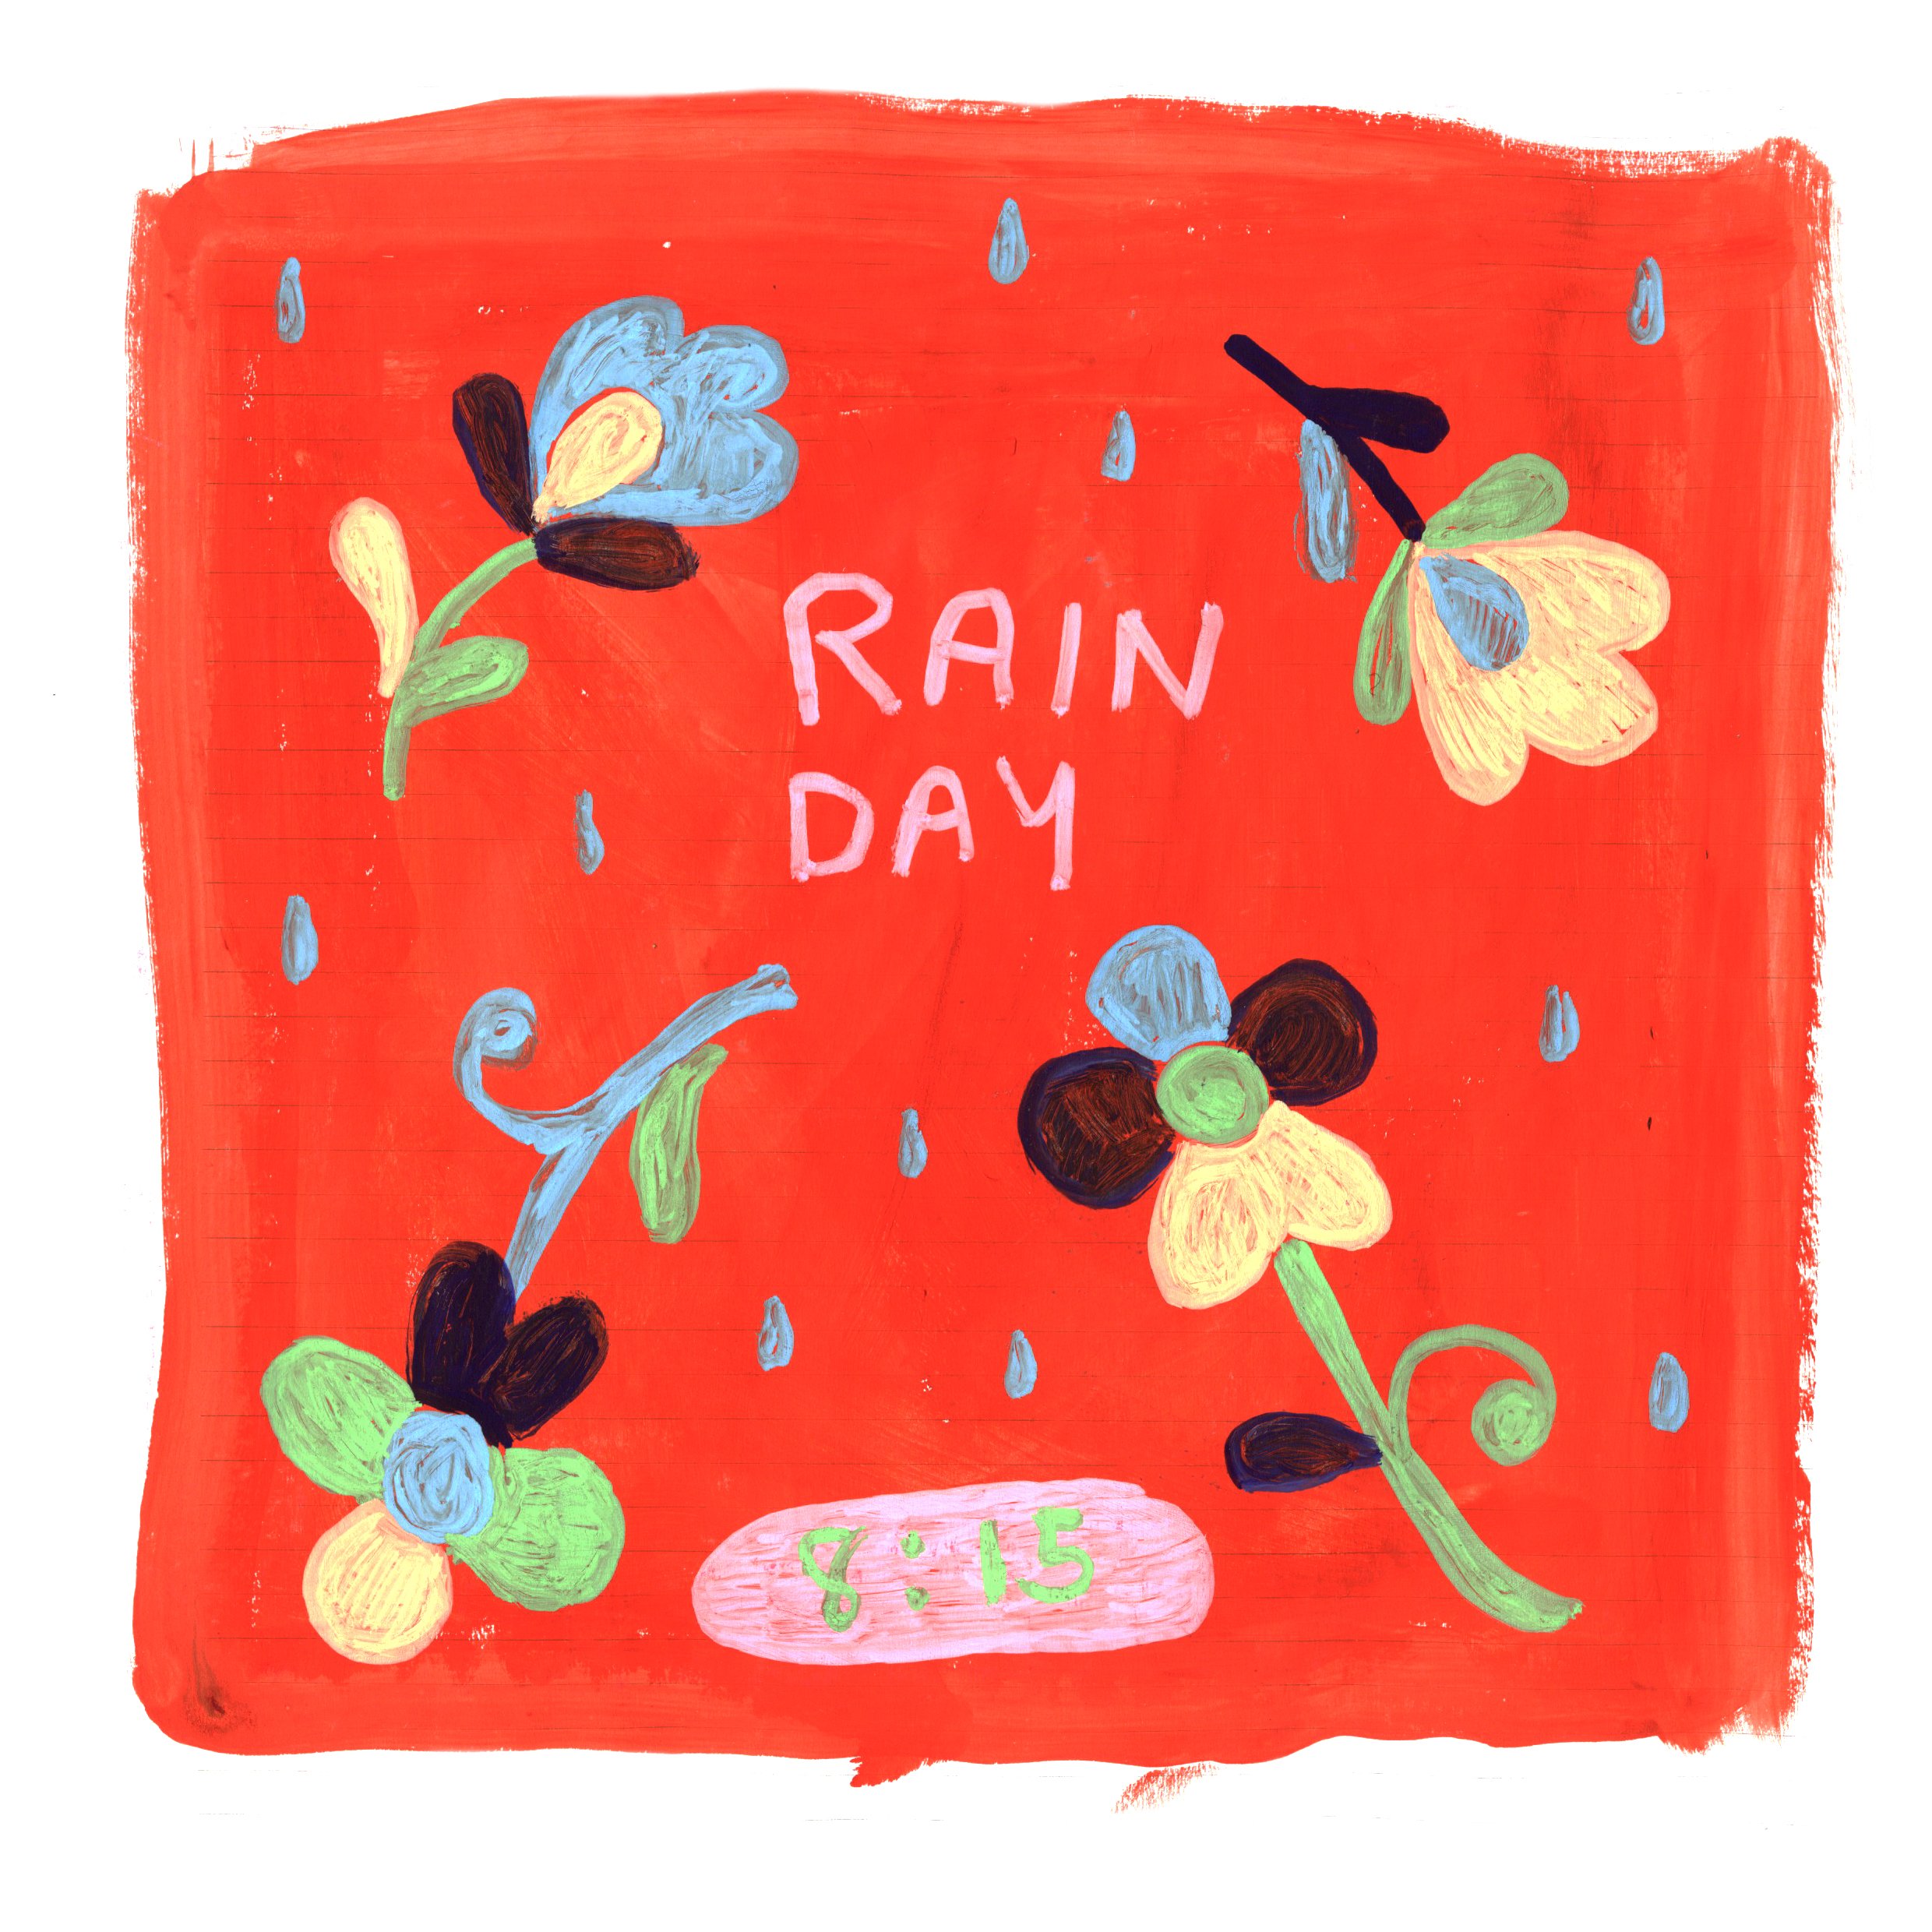 KEH_rainy day.jpg